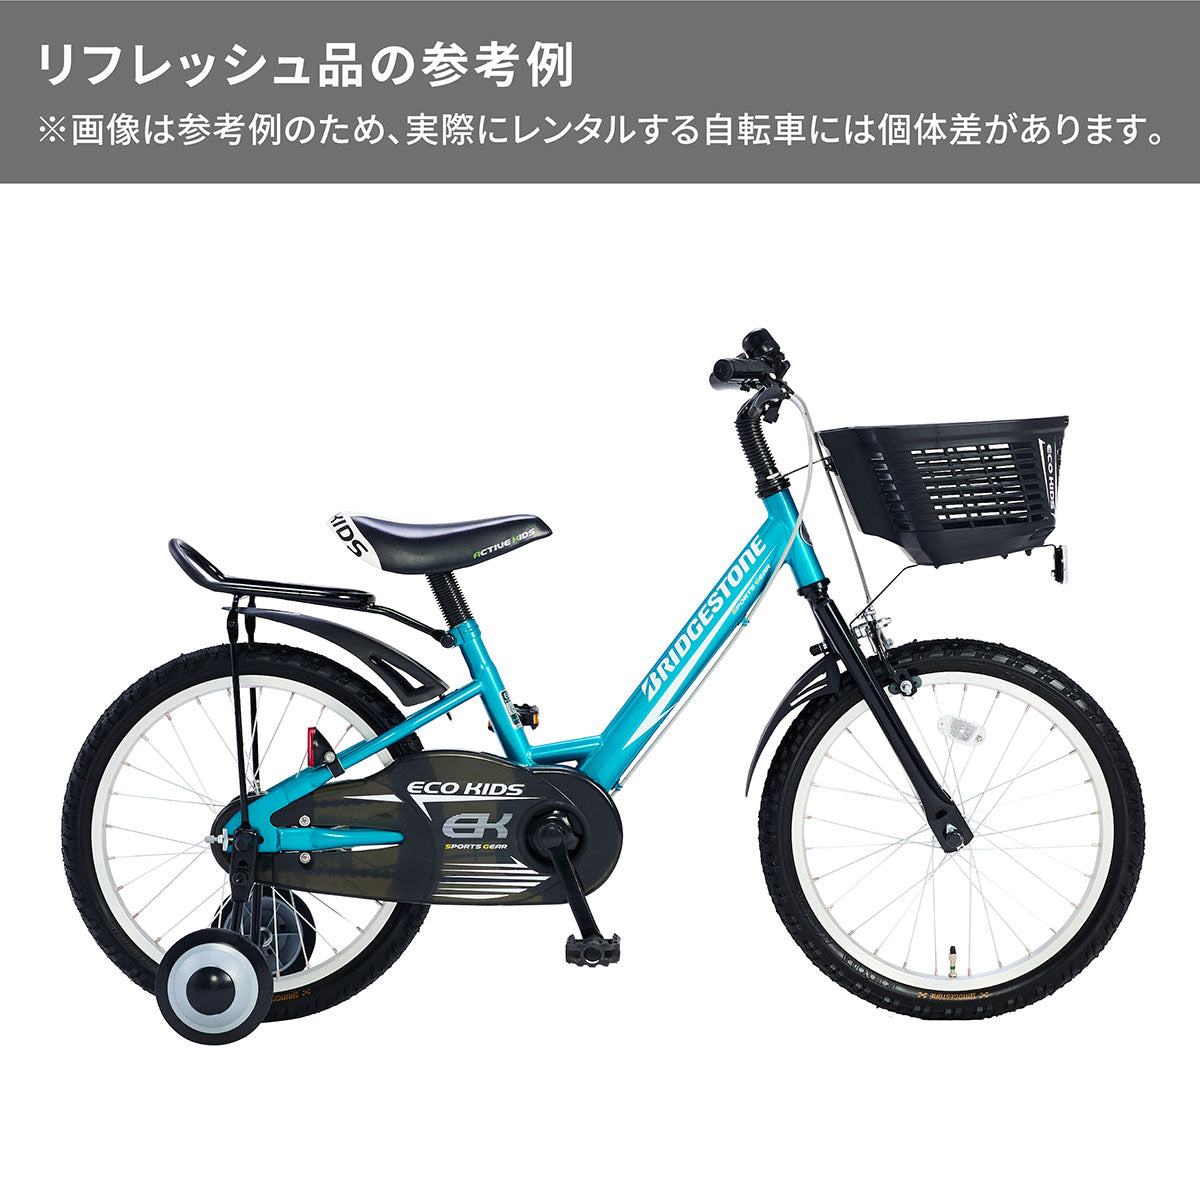 エコキッズスポーツ – Bridgestone Cycle Ethicle